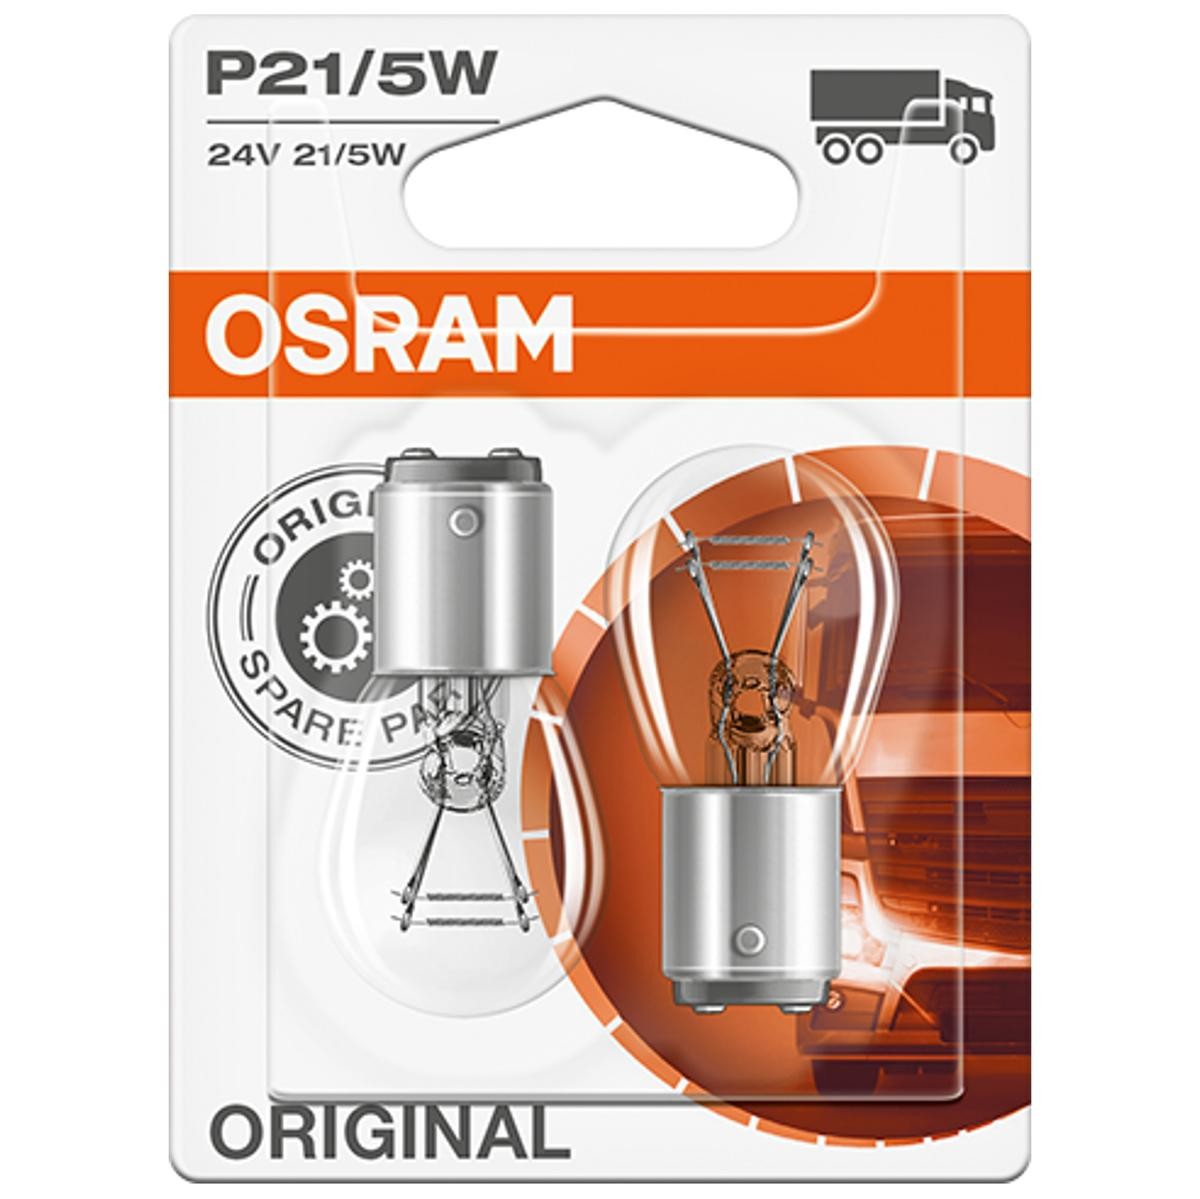 P21/5W OSRAM ORIGINAL LINE 24V 21/5W, P21/5W Bulb, indicator 7537-02B buy